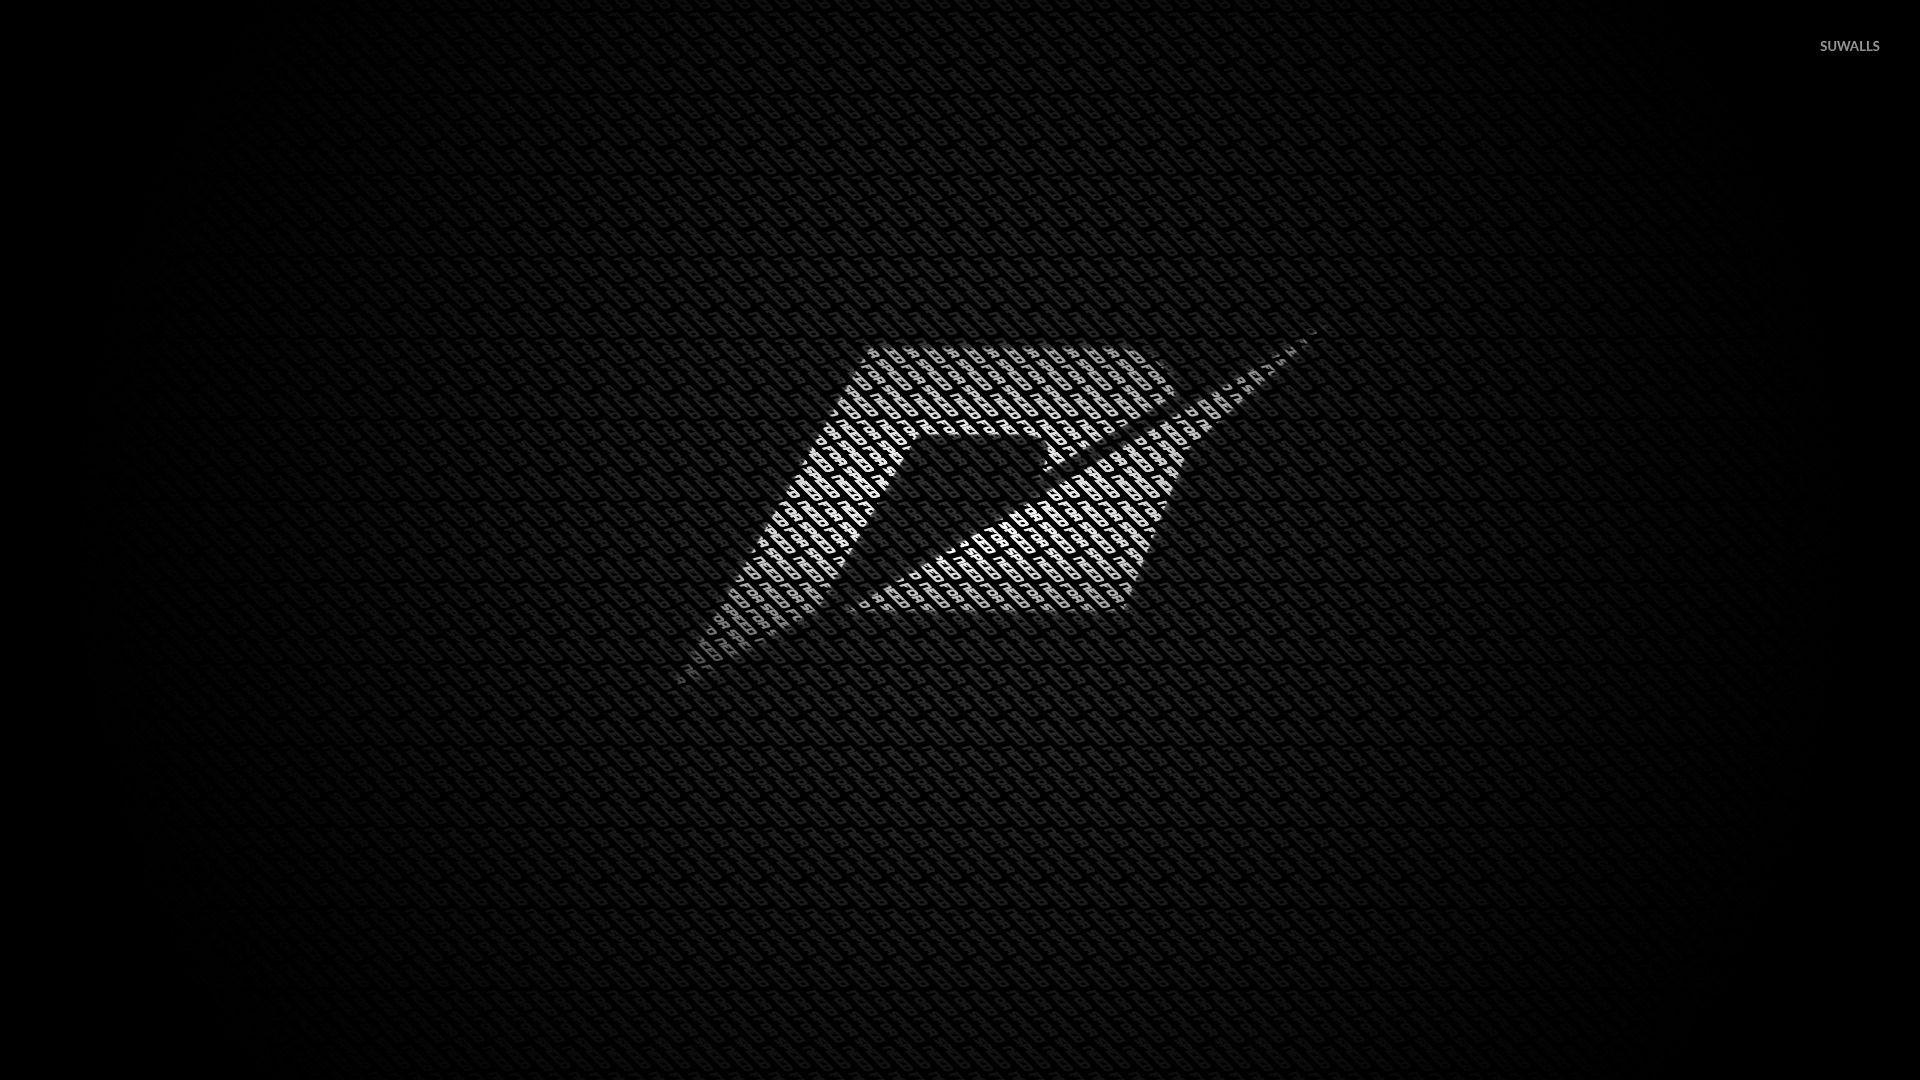 Linkin Park logo wallpaper | 2880x1800 | 4639 | WallpaperUP